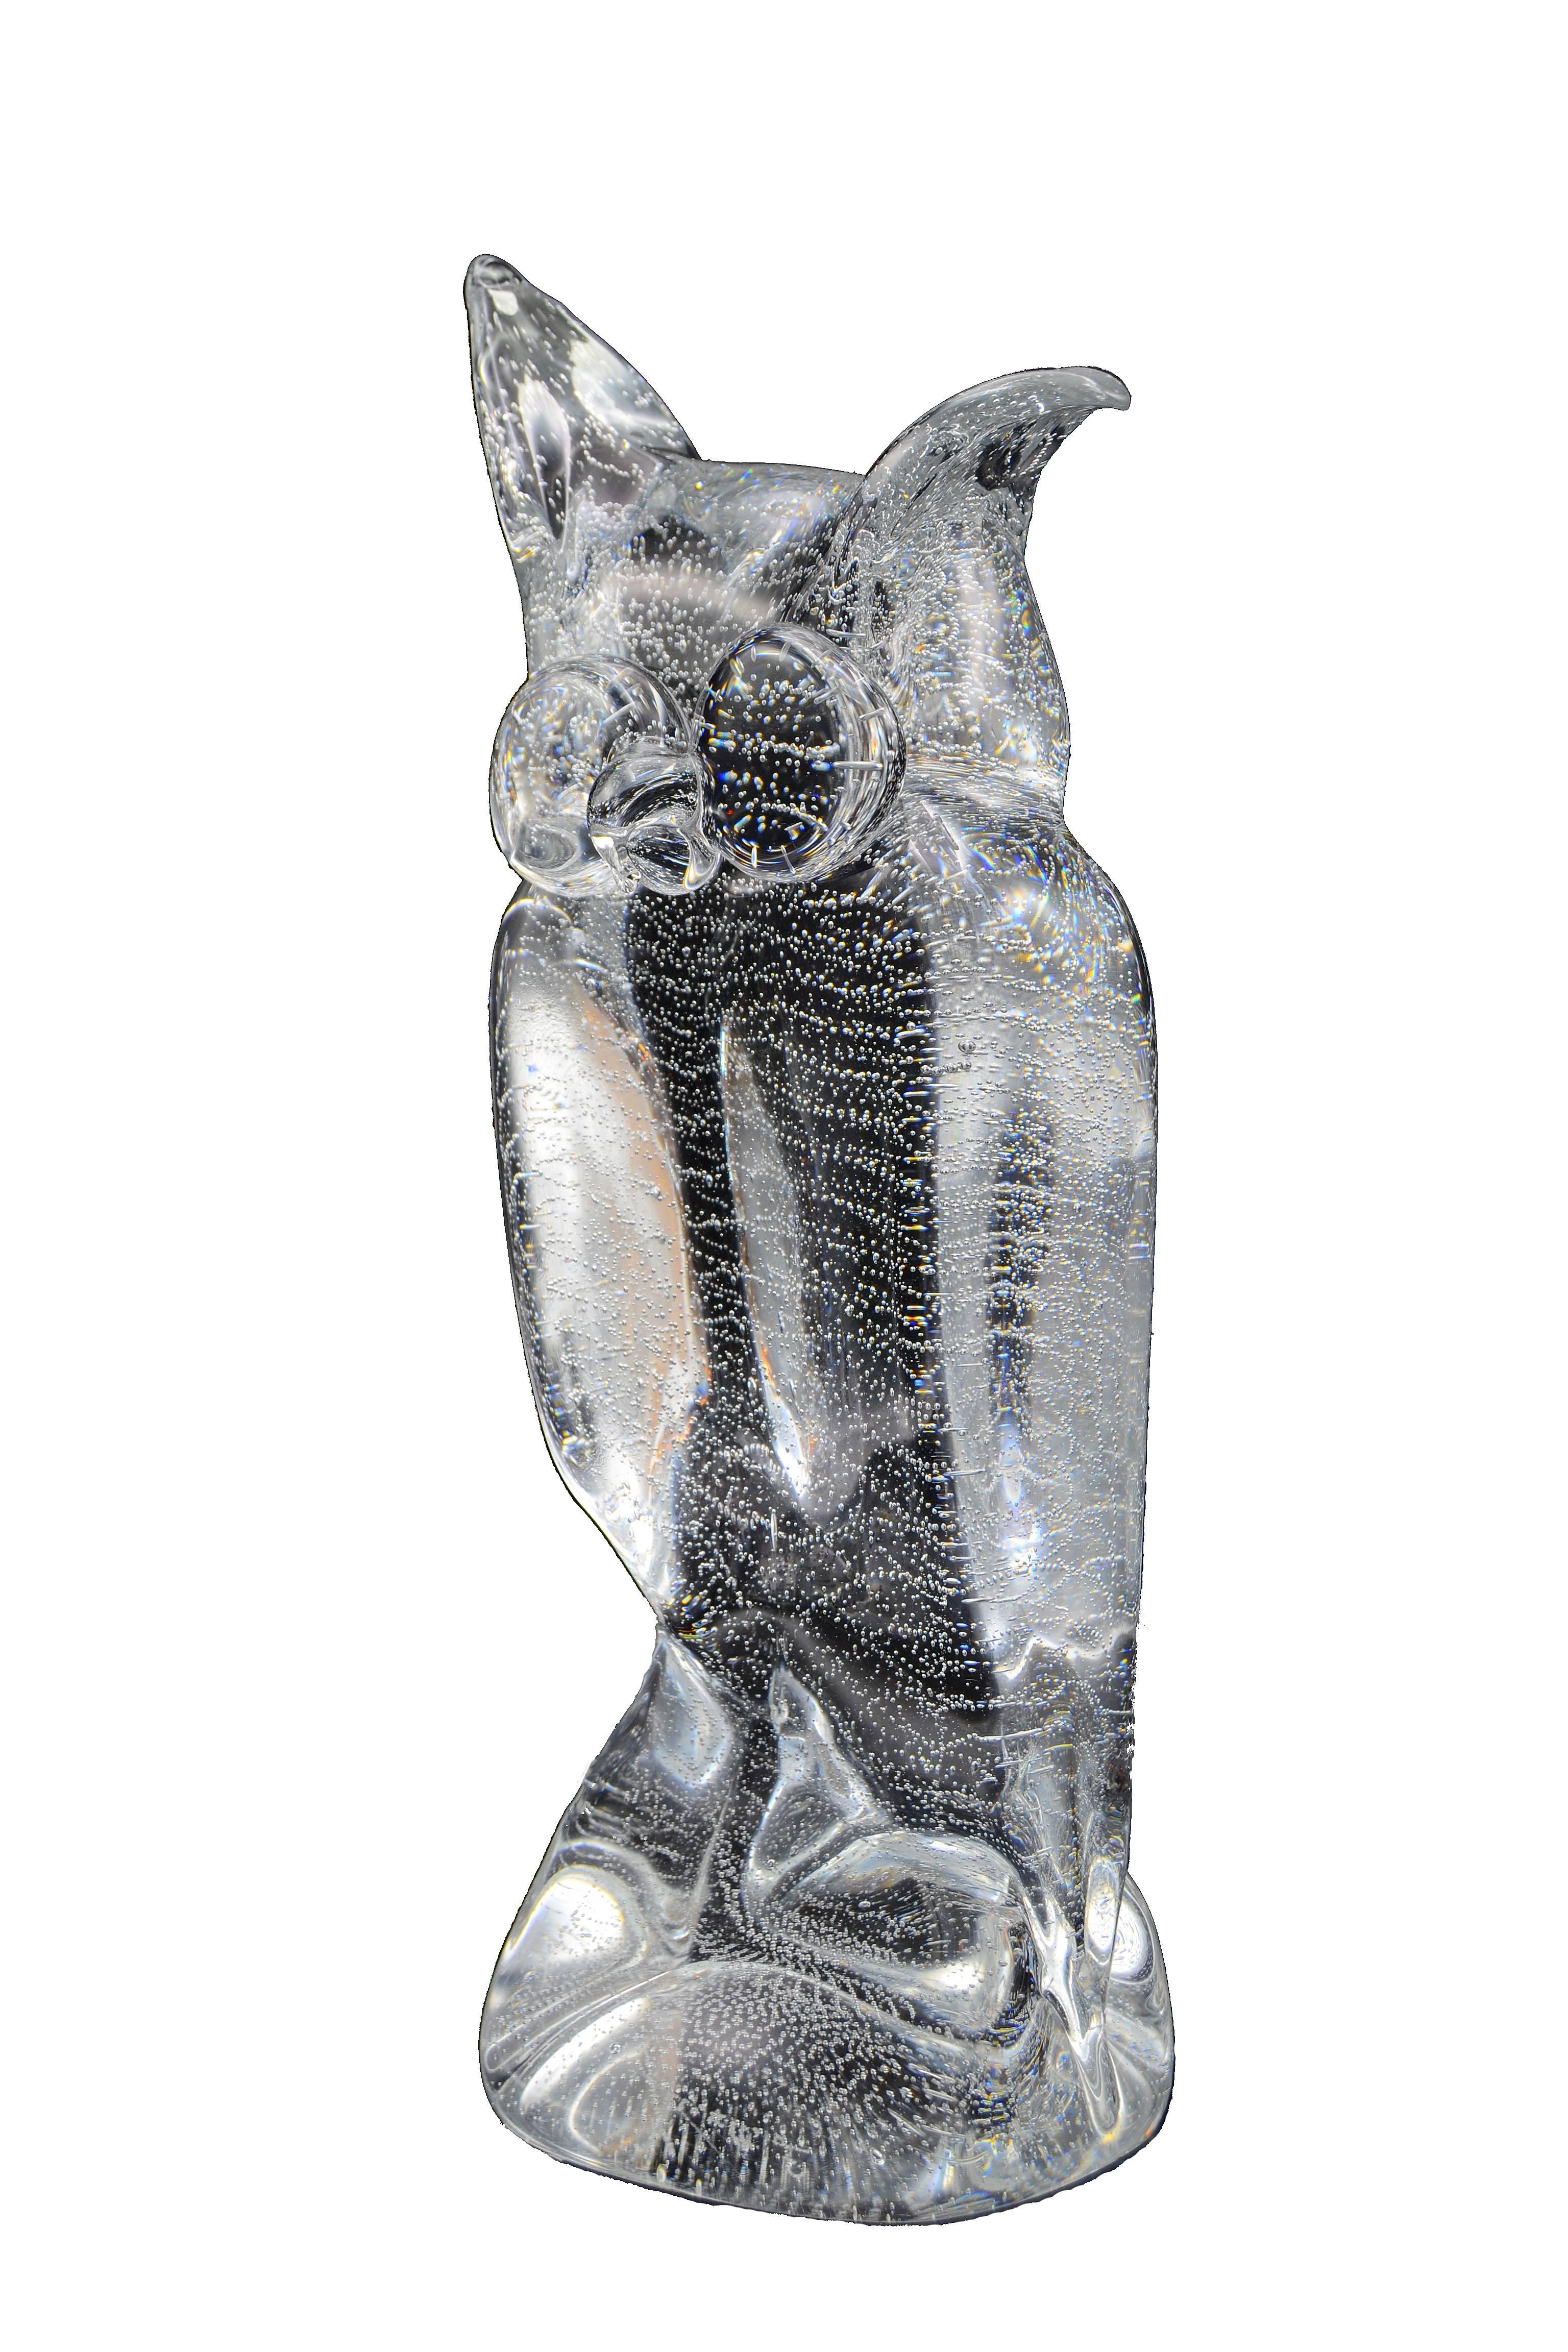 Italian Licio Zanetti Murano Glass Owl Sculpture with Bubbles